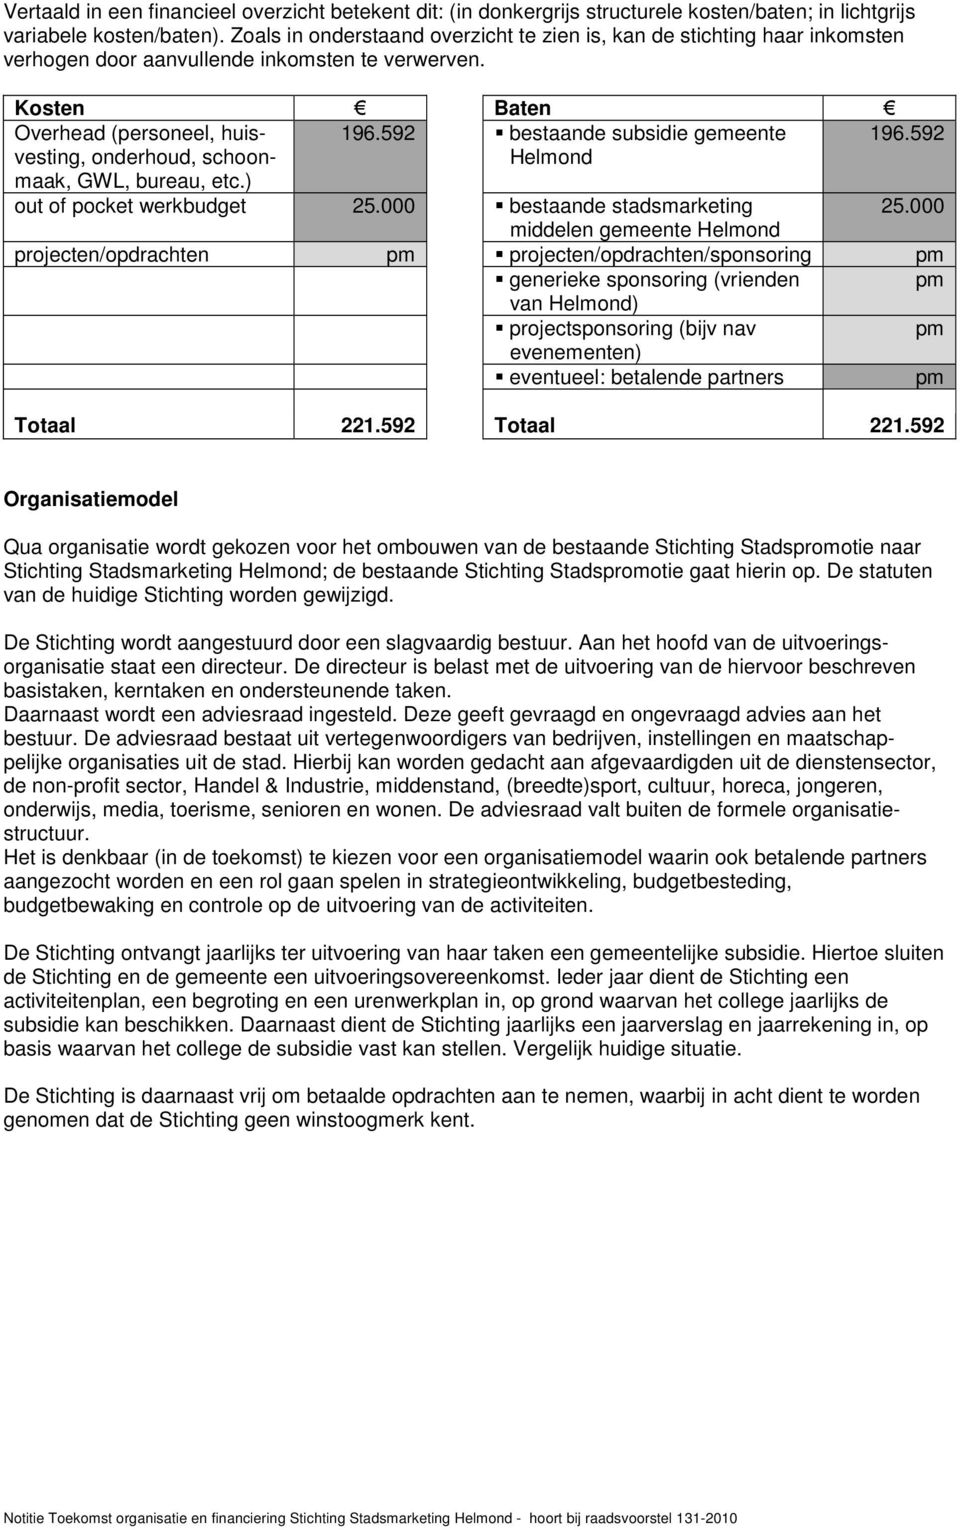 592 bestaande subsidie gemeente 196.592 onderhoud, schoon- maak, GWL, bureau, etc.) Helmond out of pocket werkbudget 25.000 bestaande stadsmarketing 25.